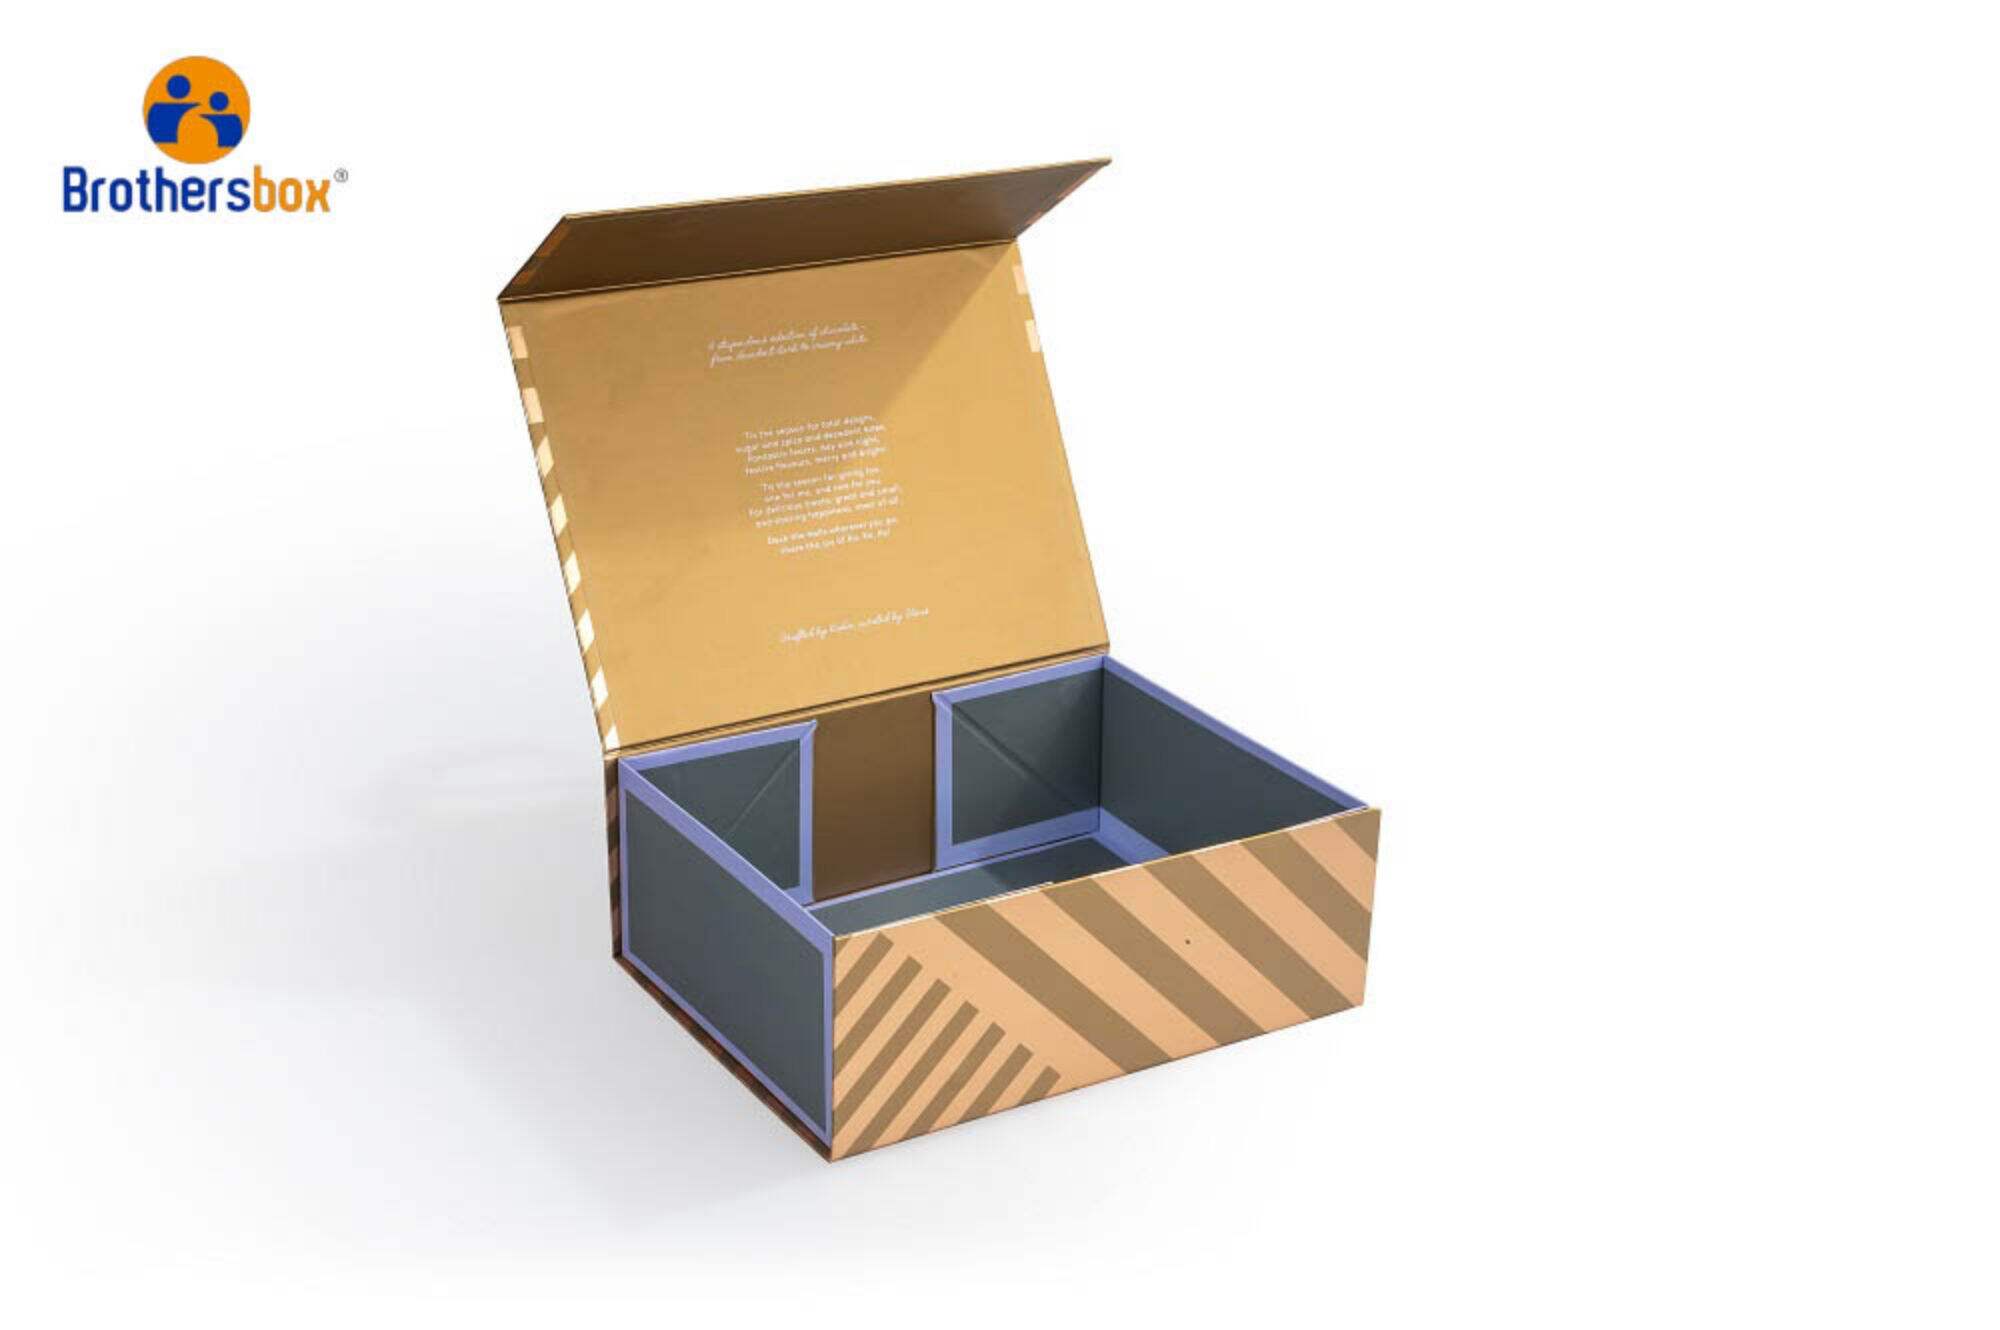 Luxusní magnetická skládací dárková krabička s efektem zlaté fólie